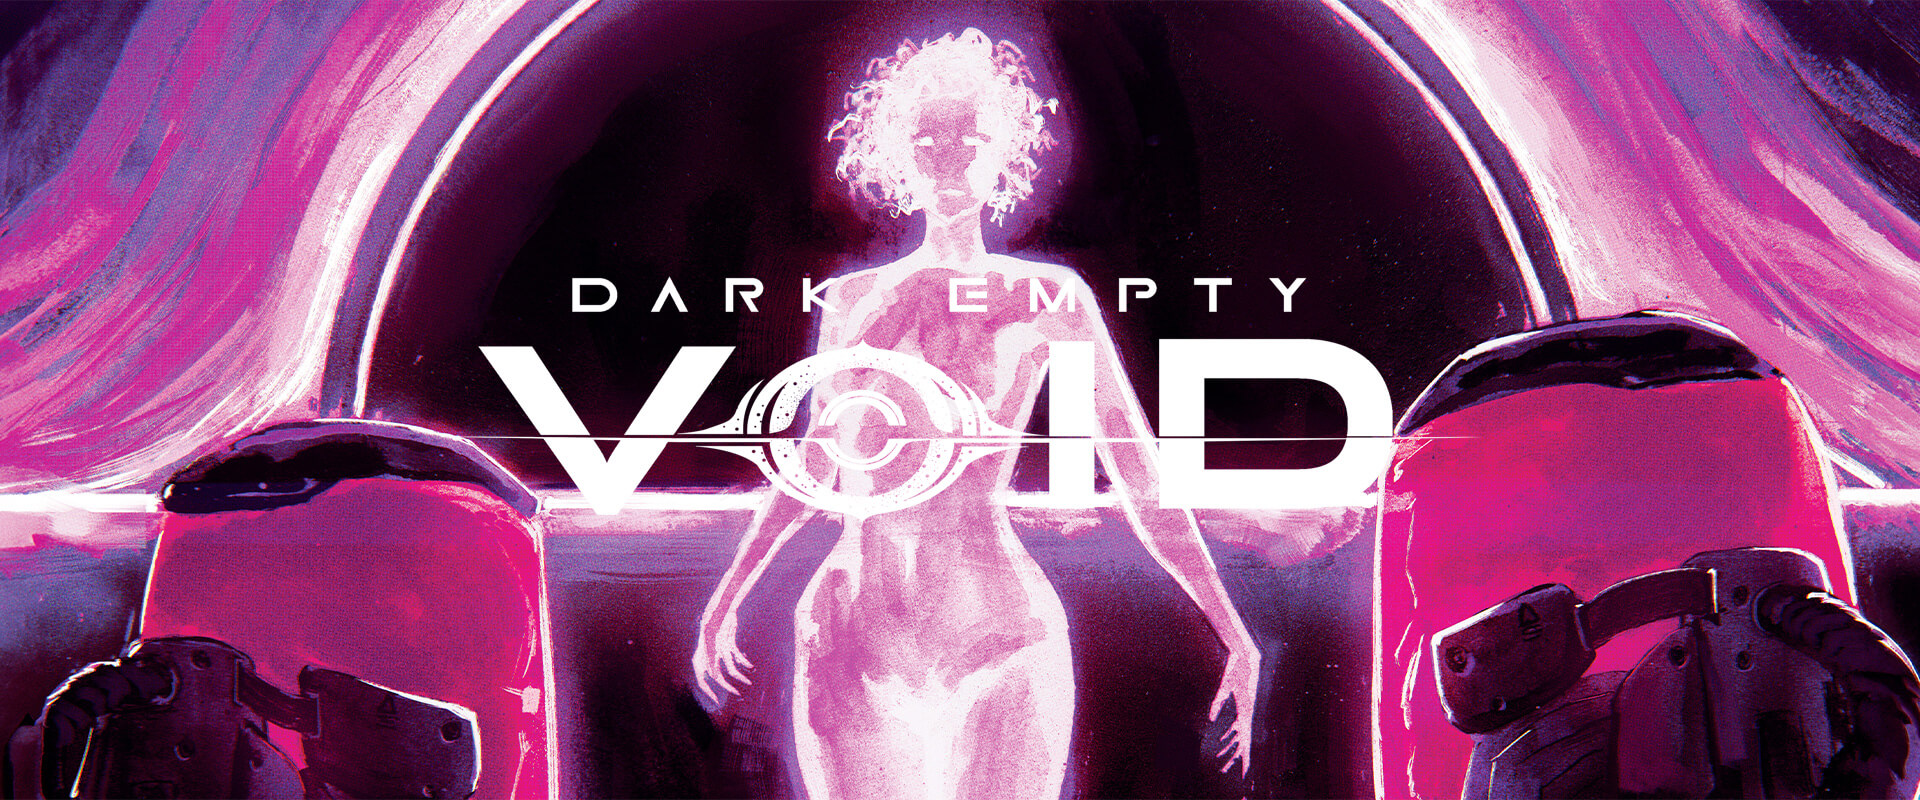 Dark Empty Void - Zack Kaplan